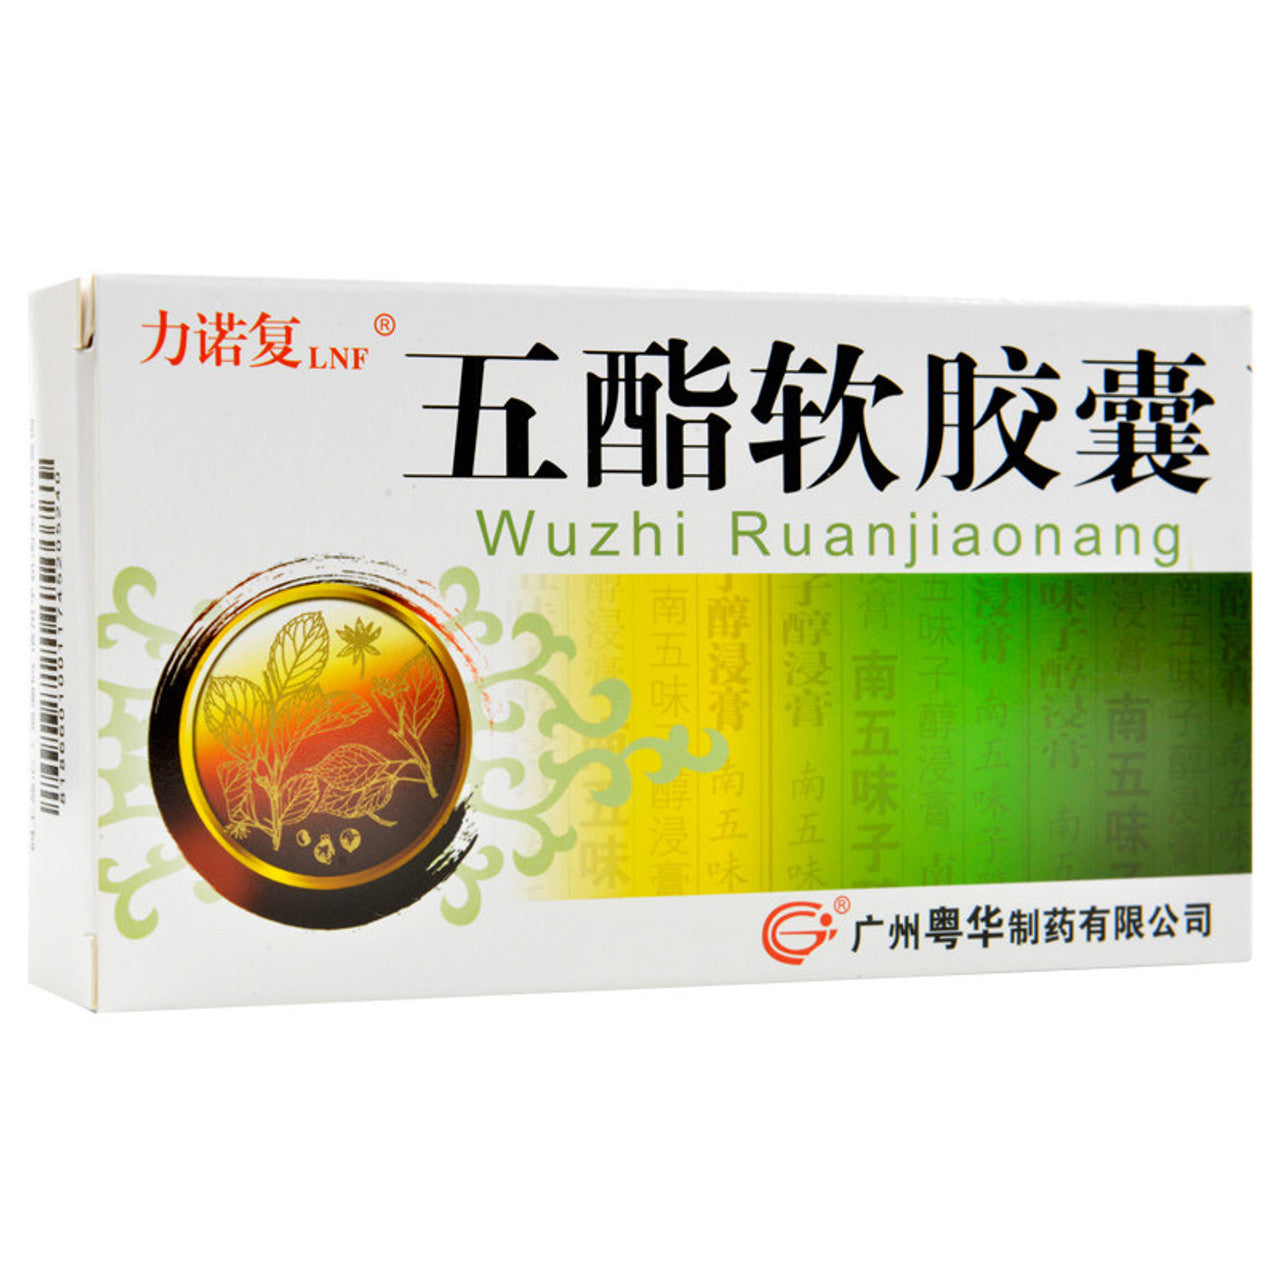 China Herb. Wuzhi Ruanjiaonang / Wu Zhi Ruan Jiao Nang / Wuzhi Soft Capsules / Wu Zhi Soft Capsules